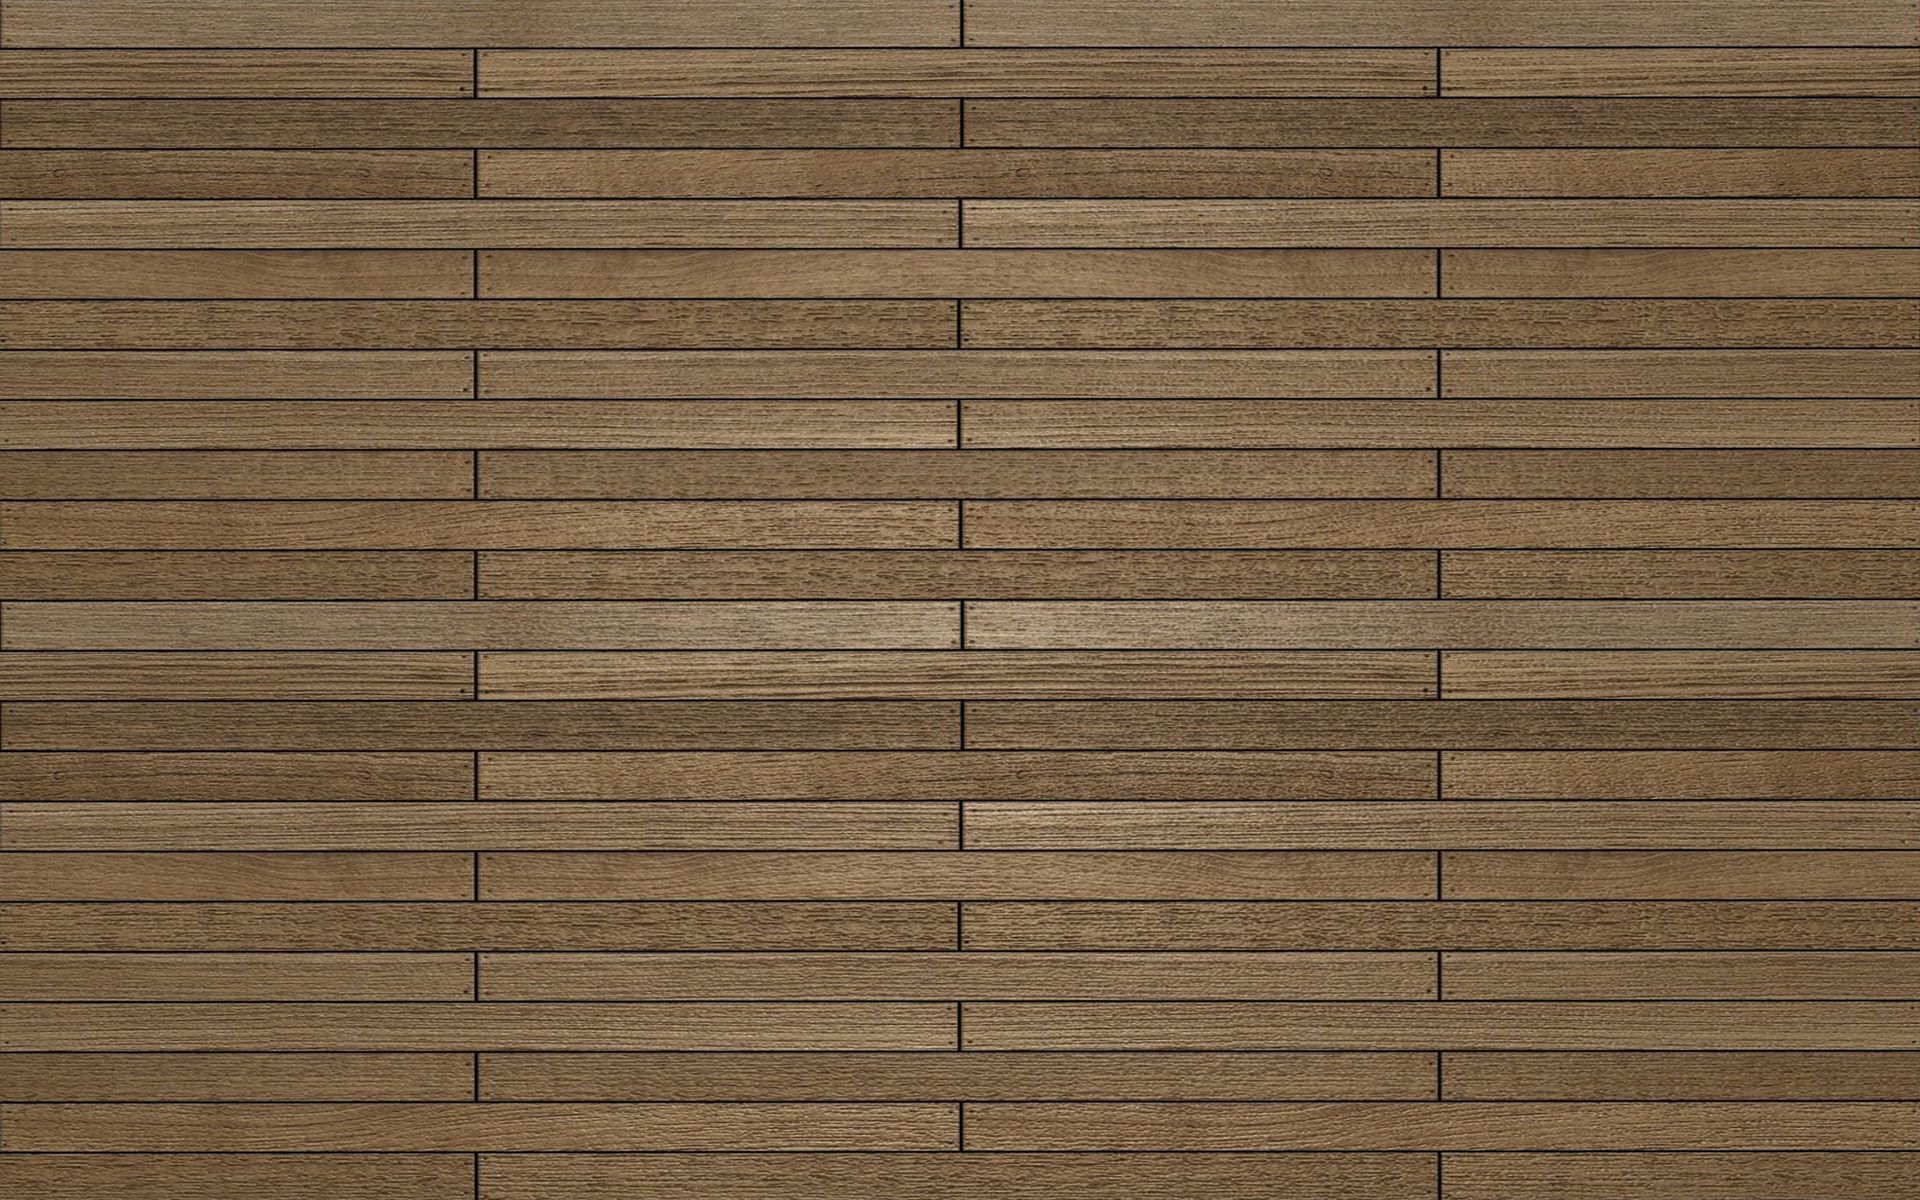 Wooden Floor wallpaper, Photography, HQ Wooden Floor pictureK Wallpaper 2019